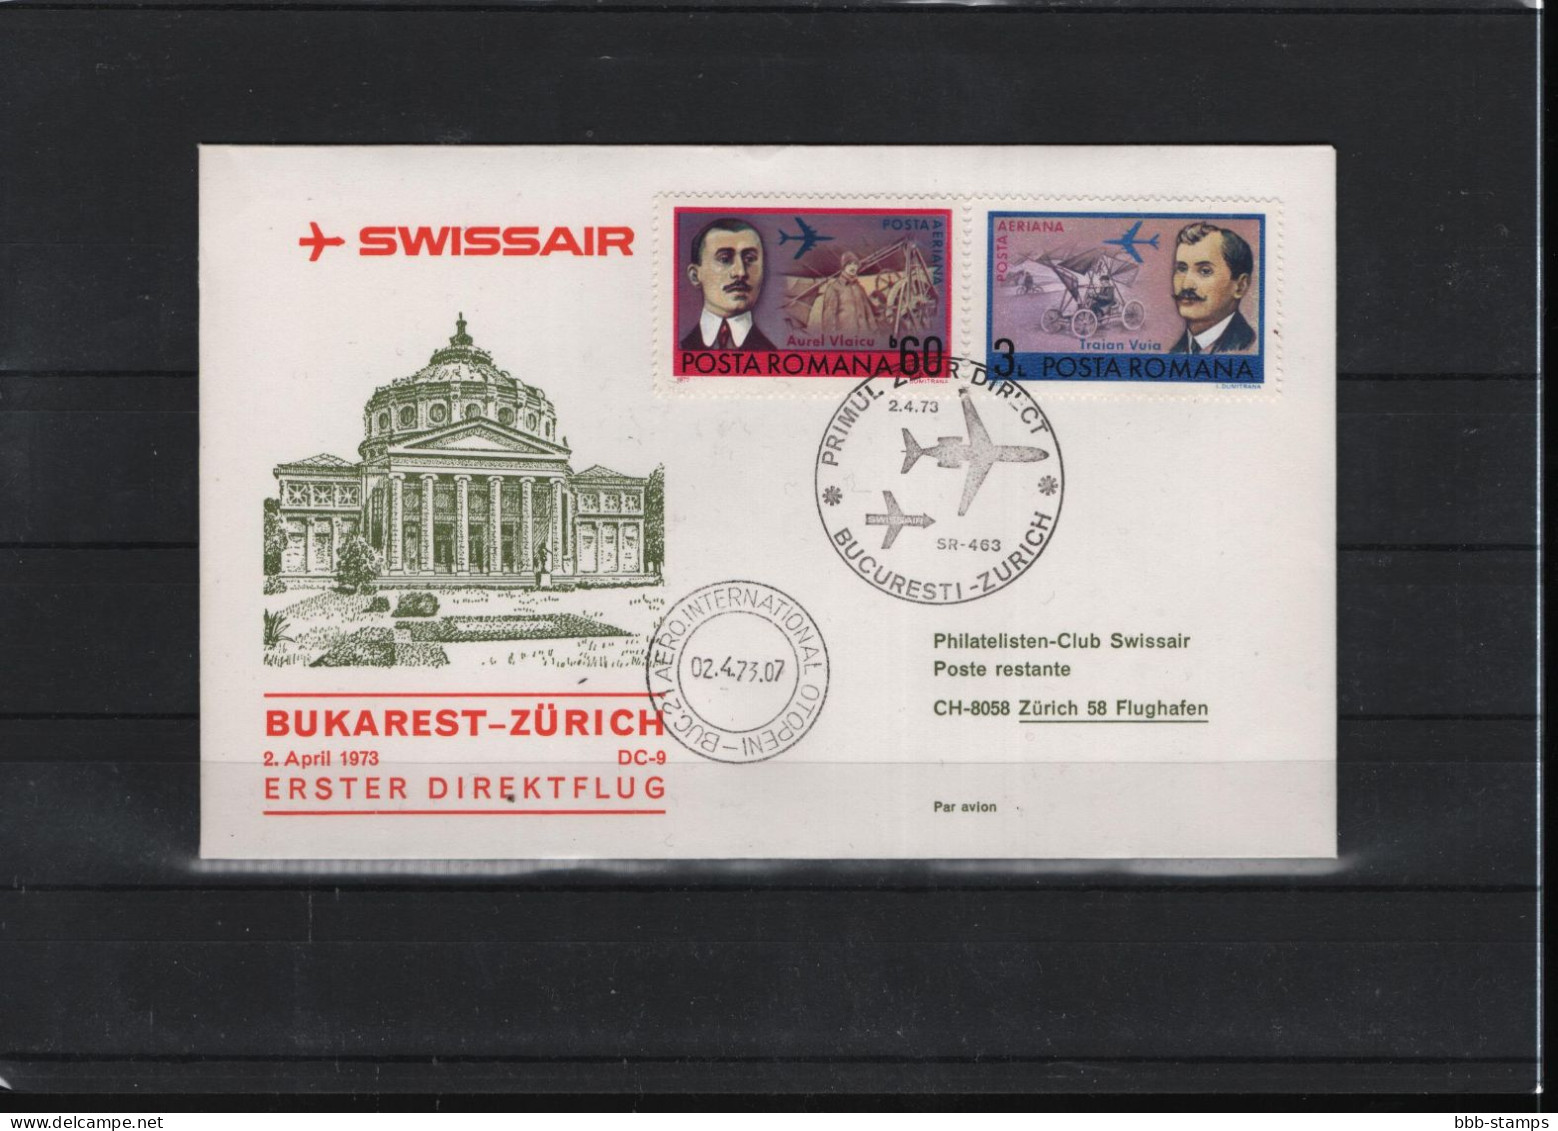 Schweiz Luftpost FFC Swissair  2.4.1973 Bukarest - Zürich - Primi Voli